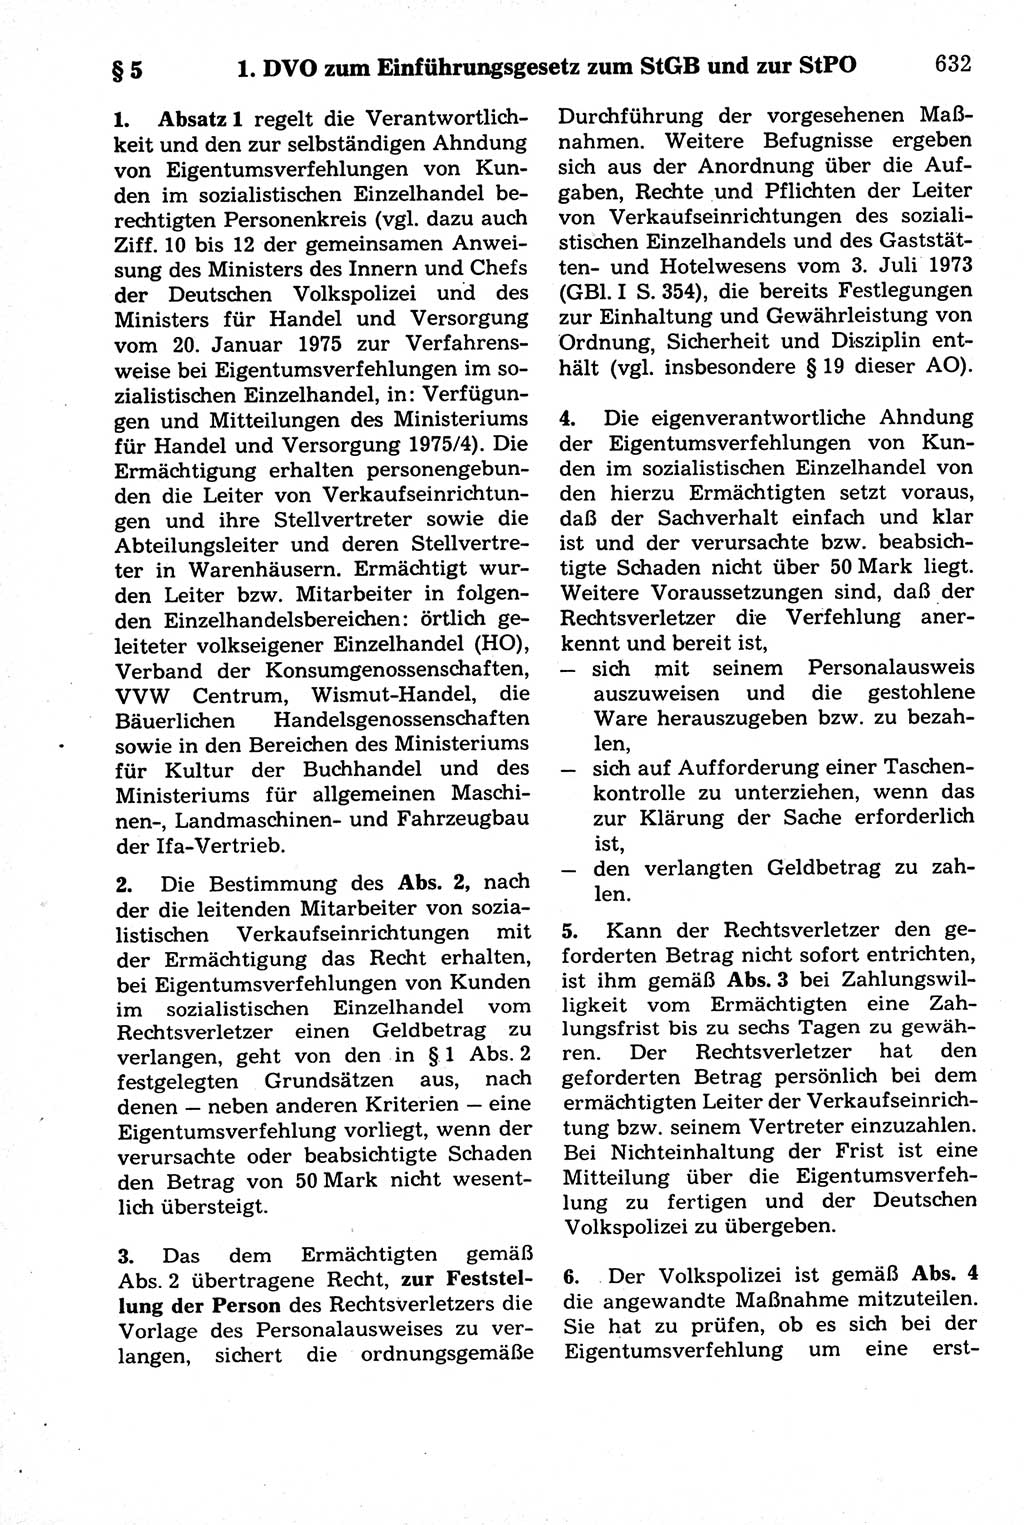 Strafrecht der Deutschen Demokratischen Republik (DDR), Kommentar zum Strafgesetzbuch (StGB) 1981, Seite 632 (Strafr. DDR Komm. StGB 1981, S. 632)